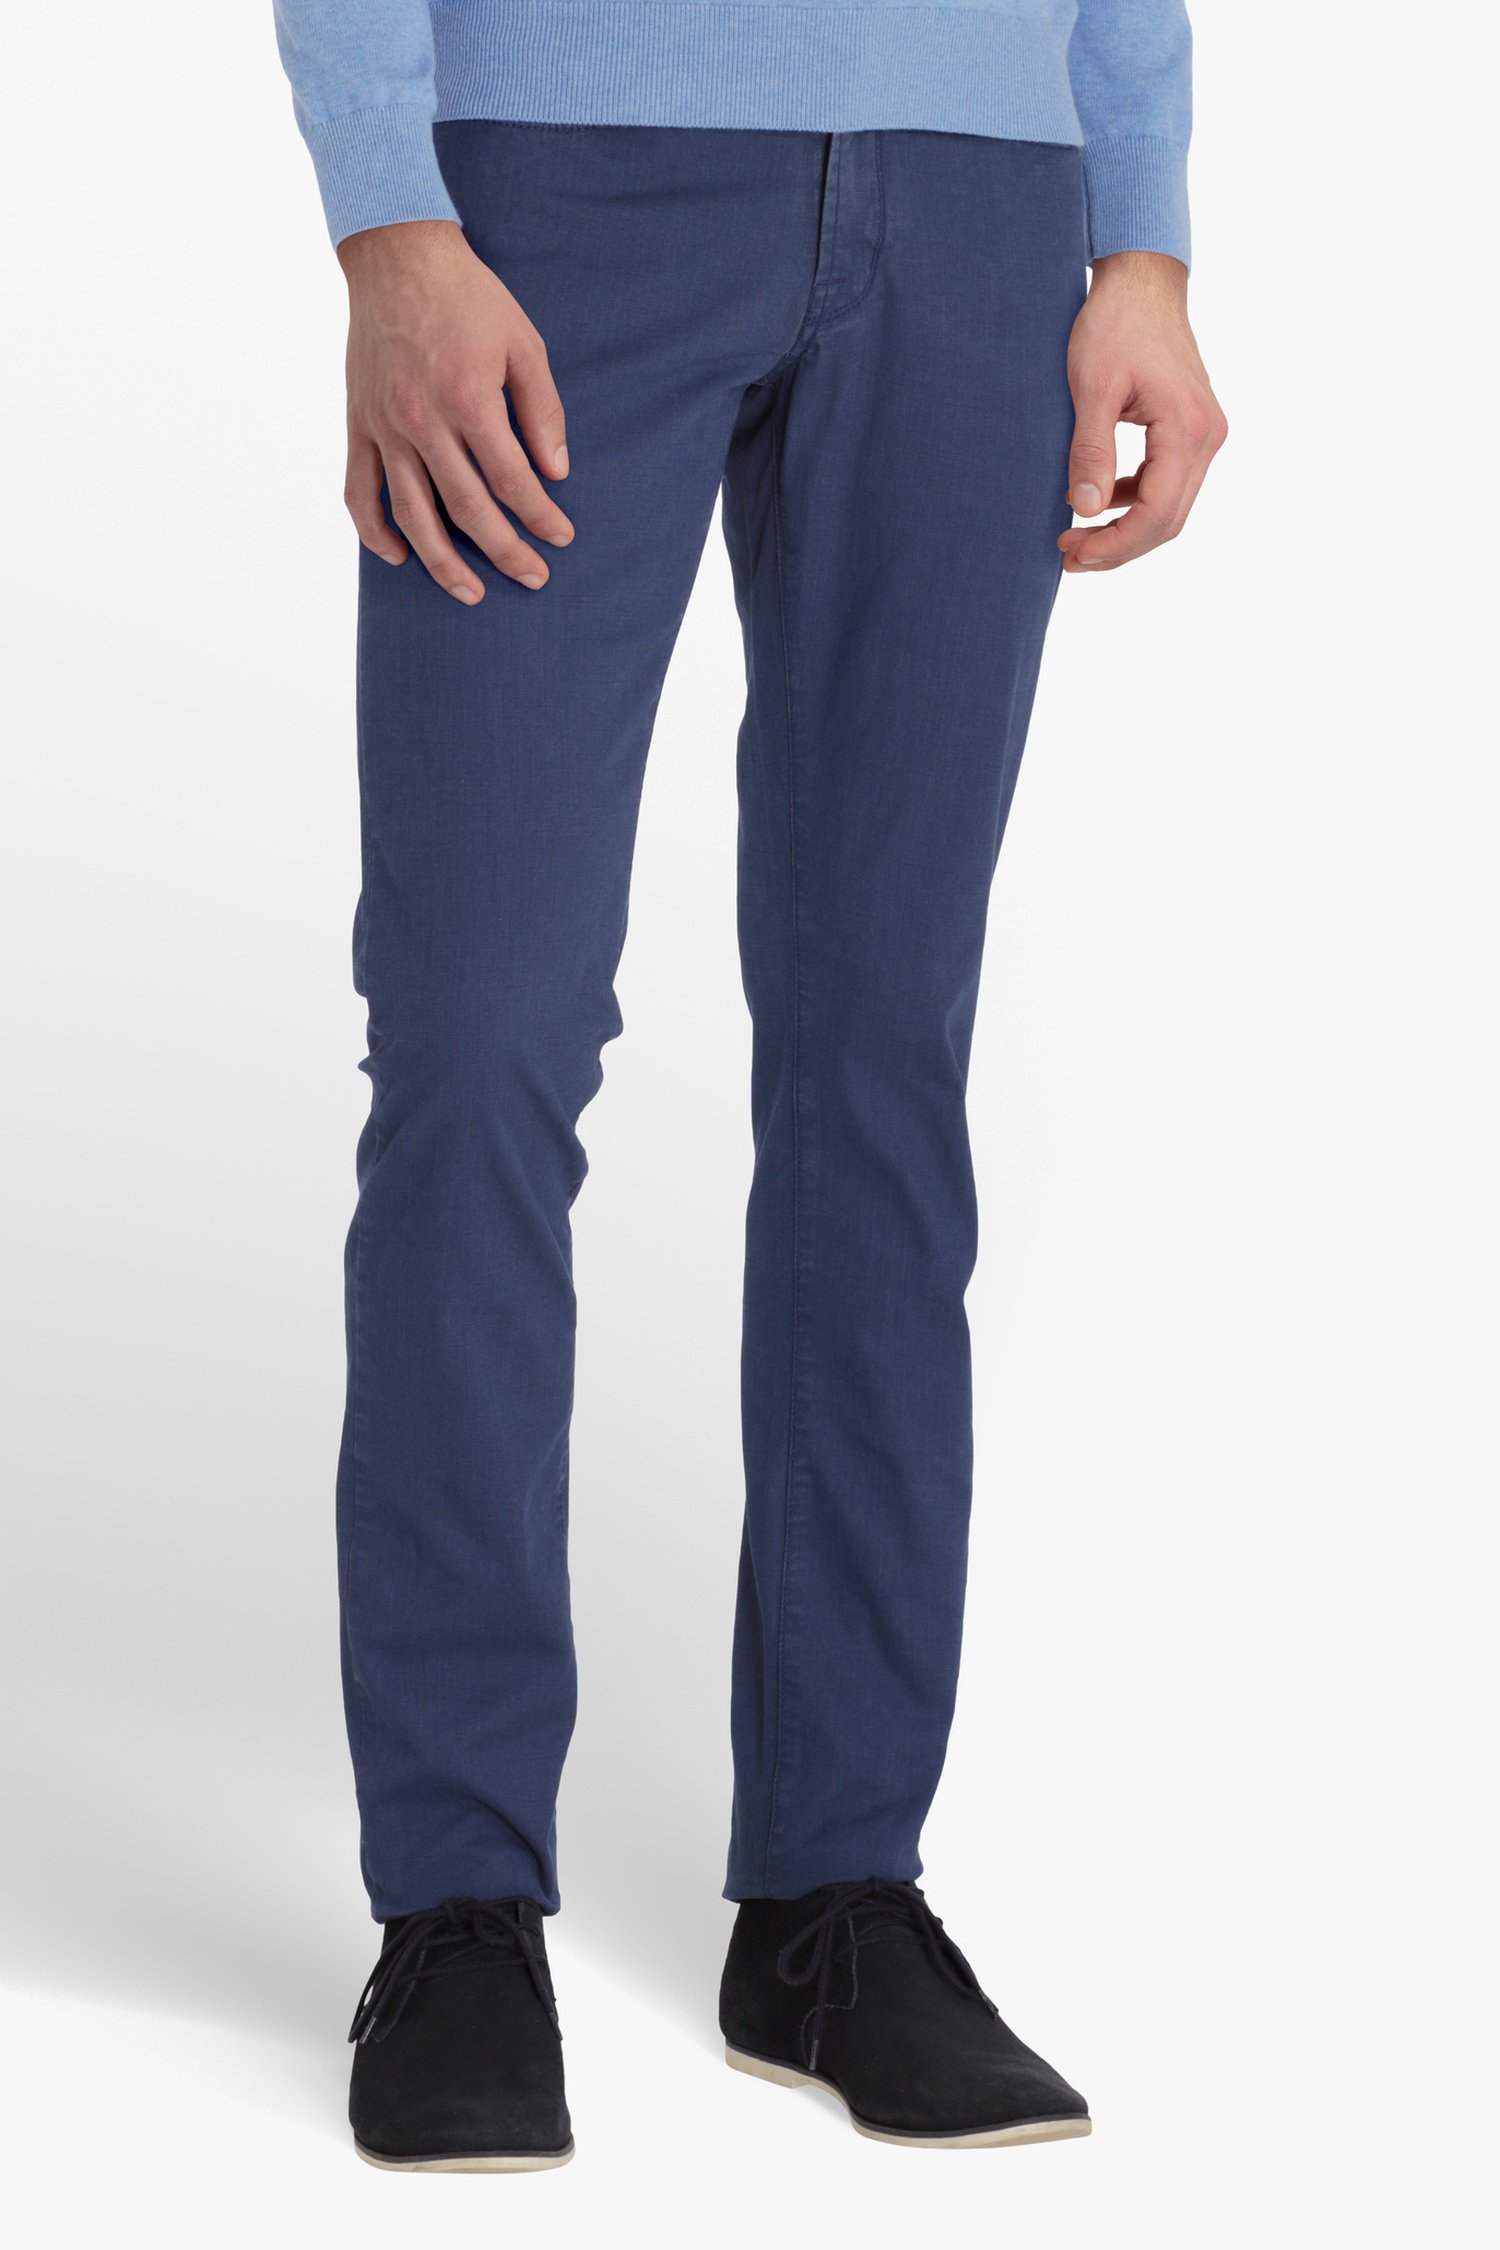 Gedeeltelijk zich zorgen maken Ongrijpbaar Blauwe broek - Jefferson - slim fit van Brassville | 9589963 | e5